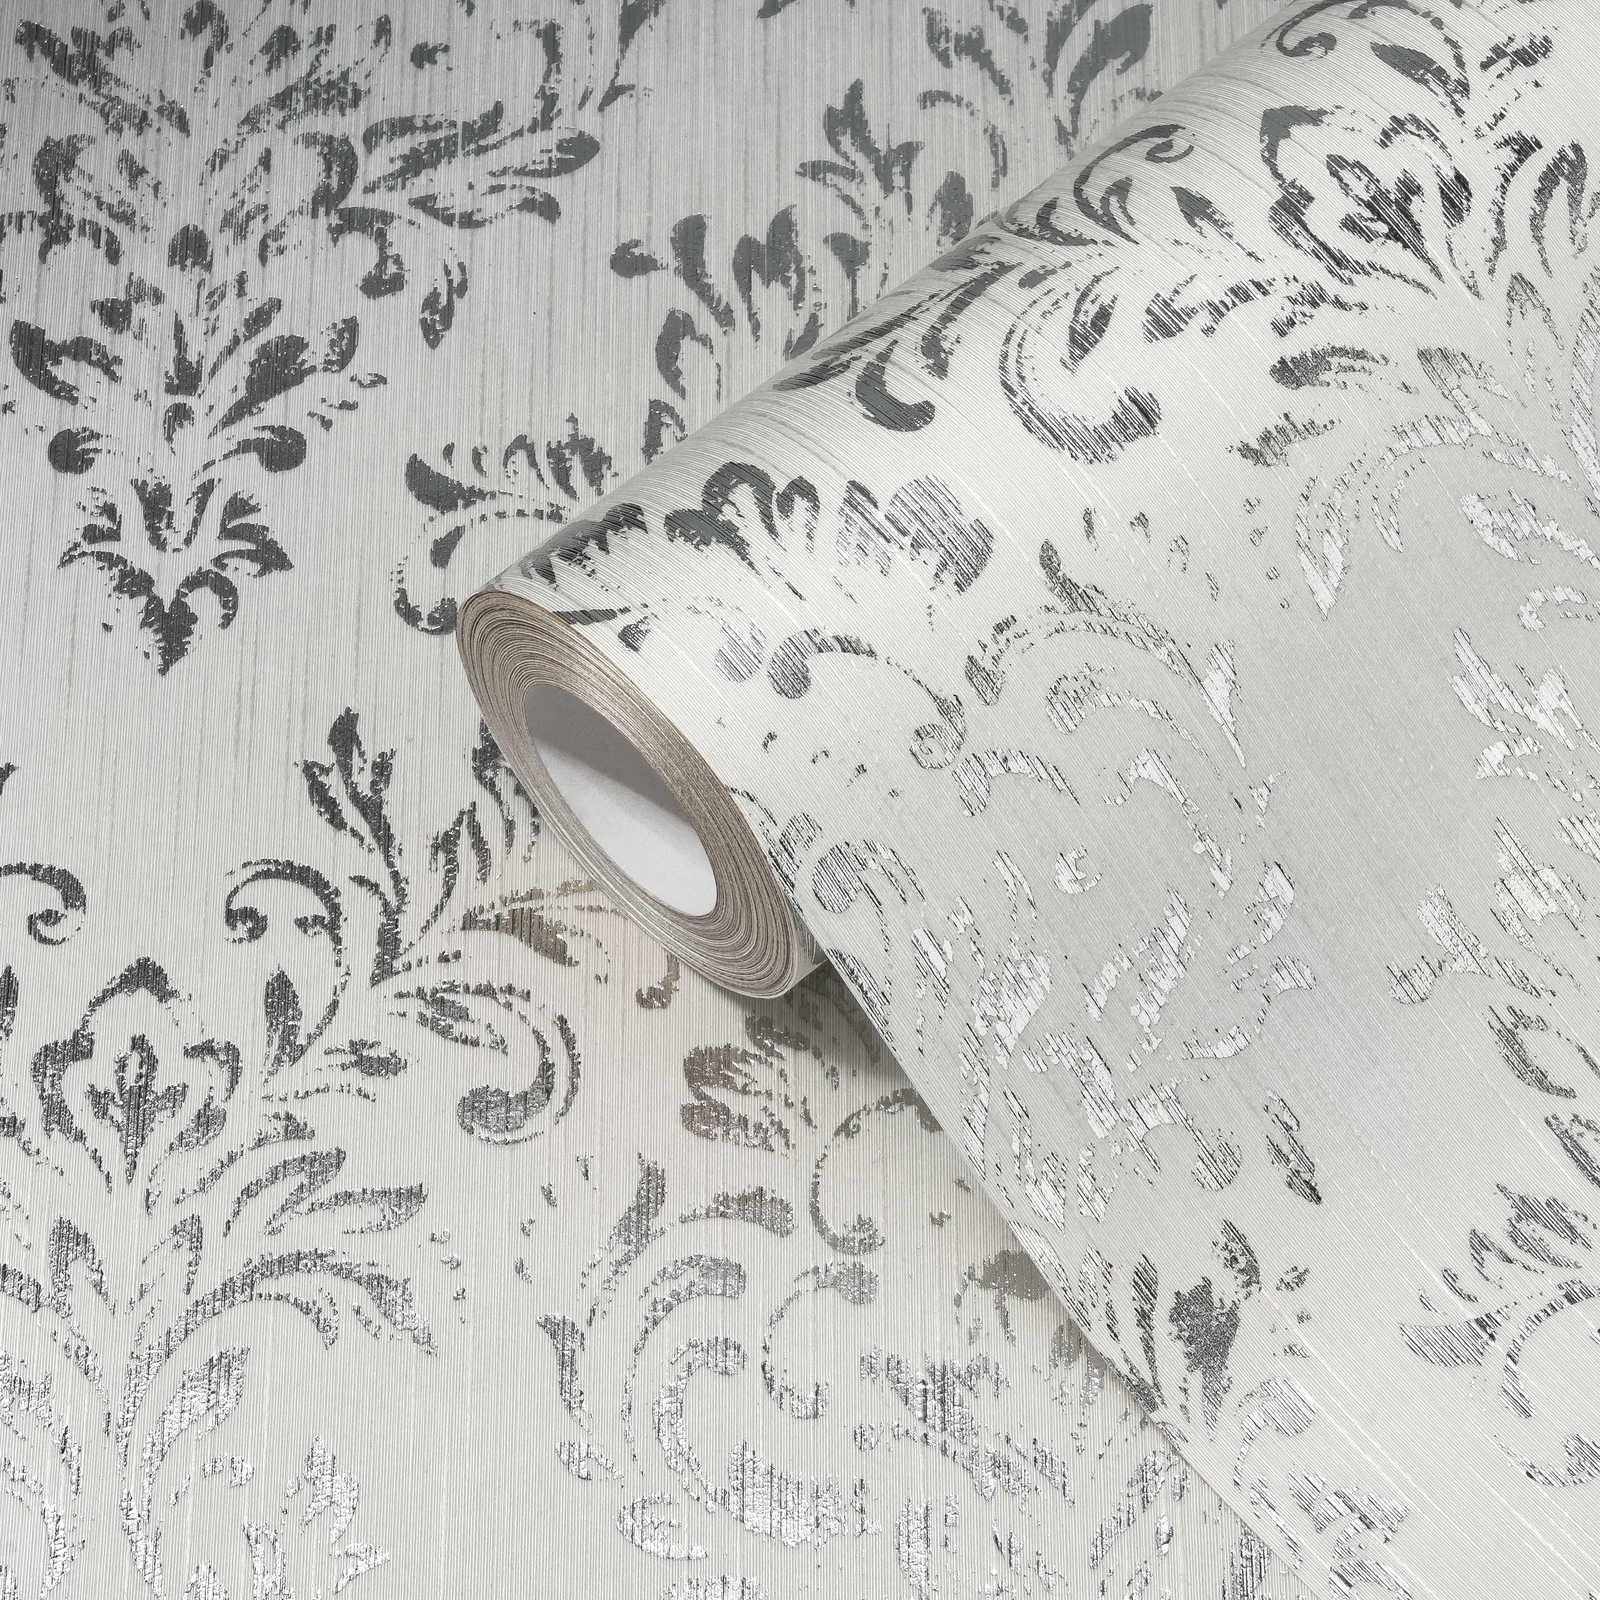             Ornamenttapete in floralem Design mit Glitzer-Effekt – Silber, Weiß
        